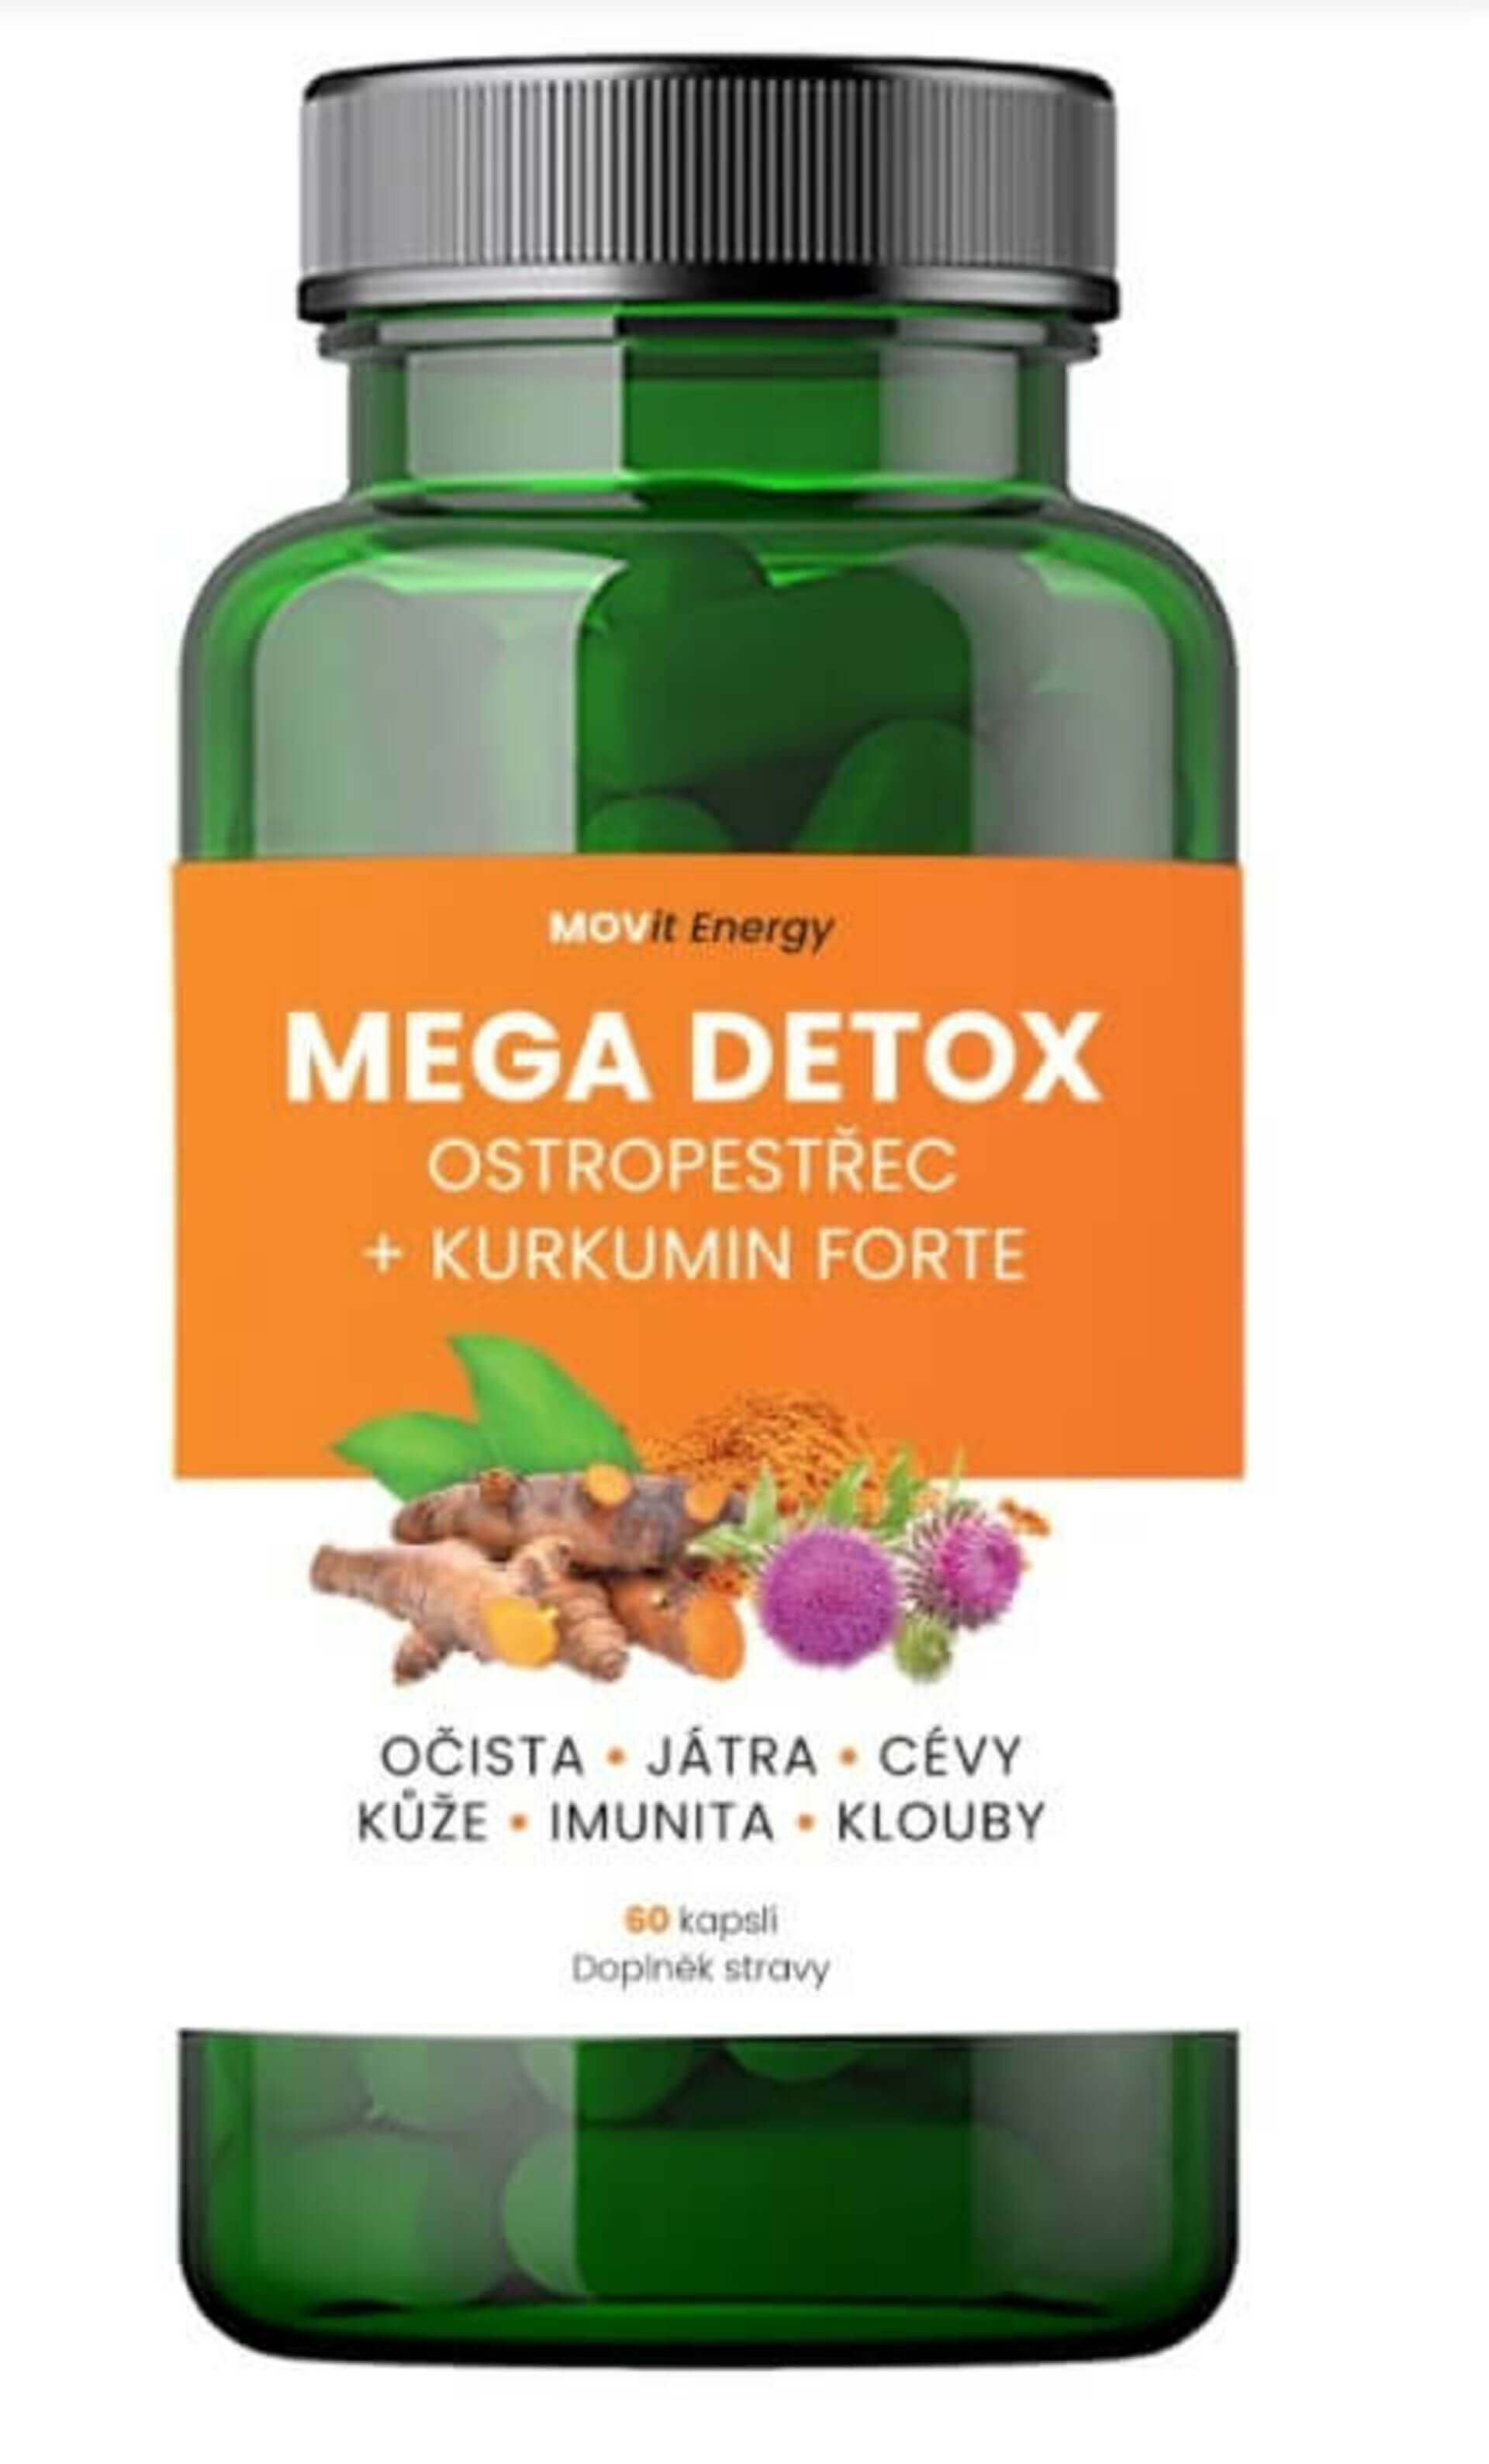 Movit energy Mega Detox Ostropestrec + Kurkumín FORTE, 60 kapslí